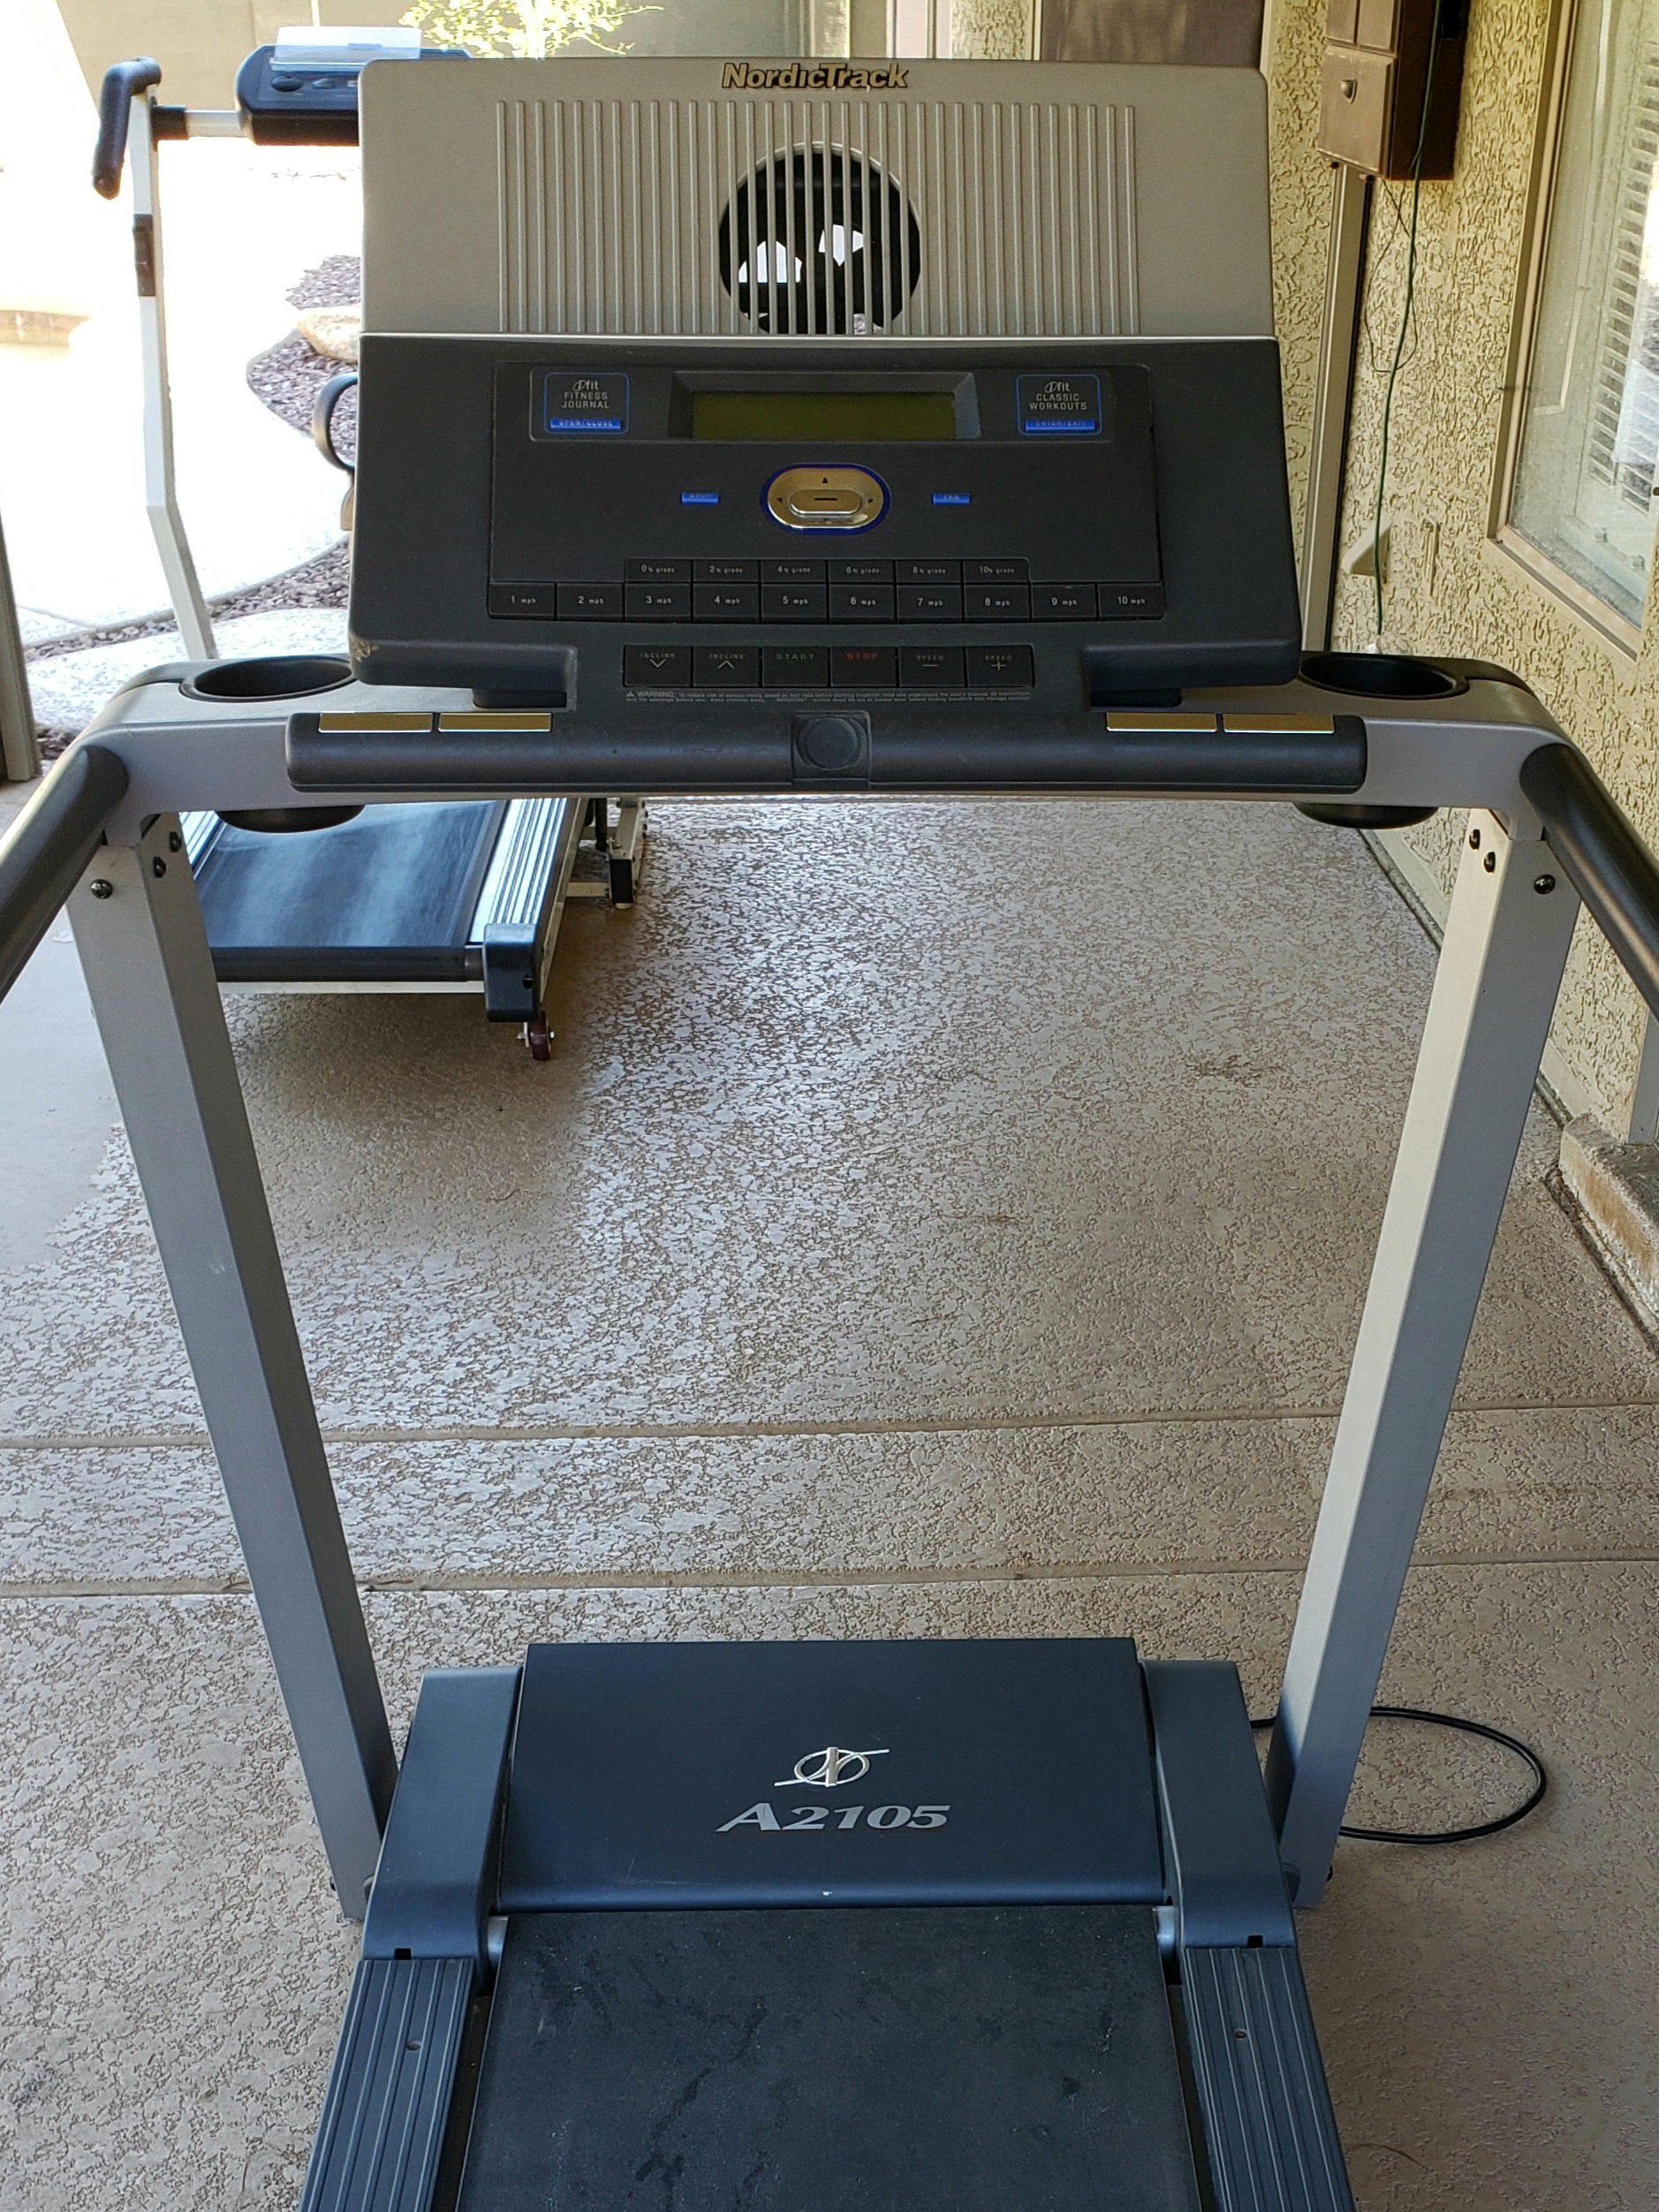 NordicTrack A2105 Treadmill